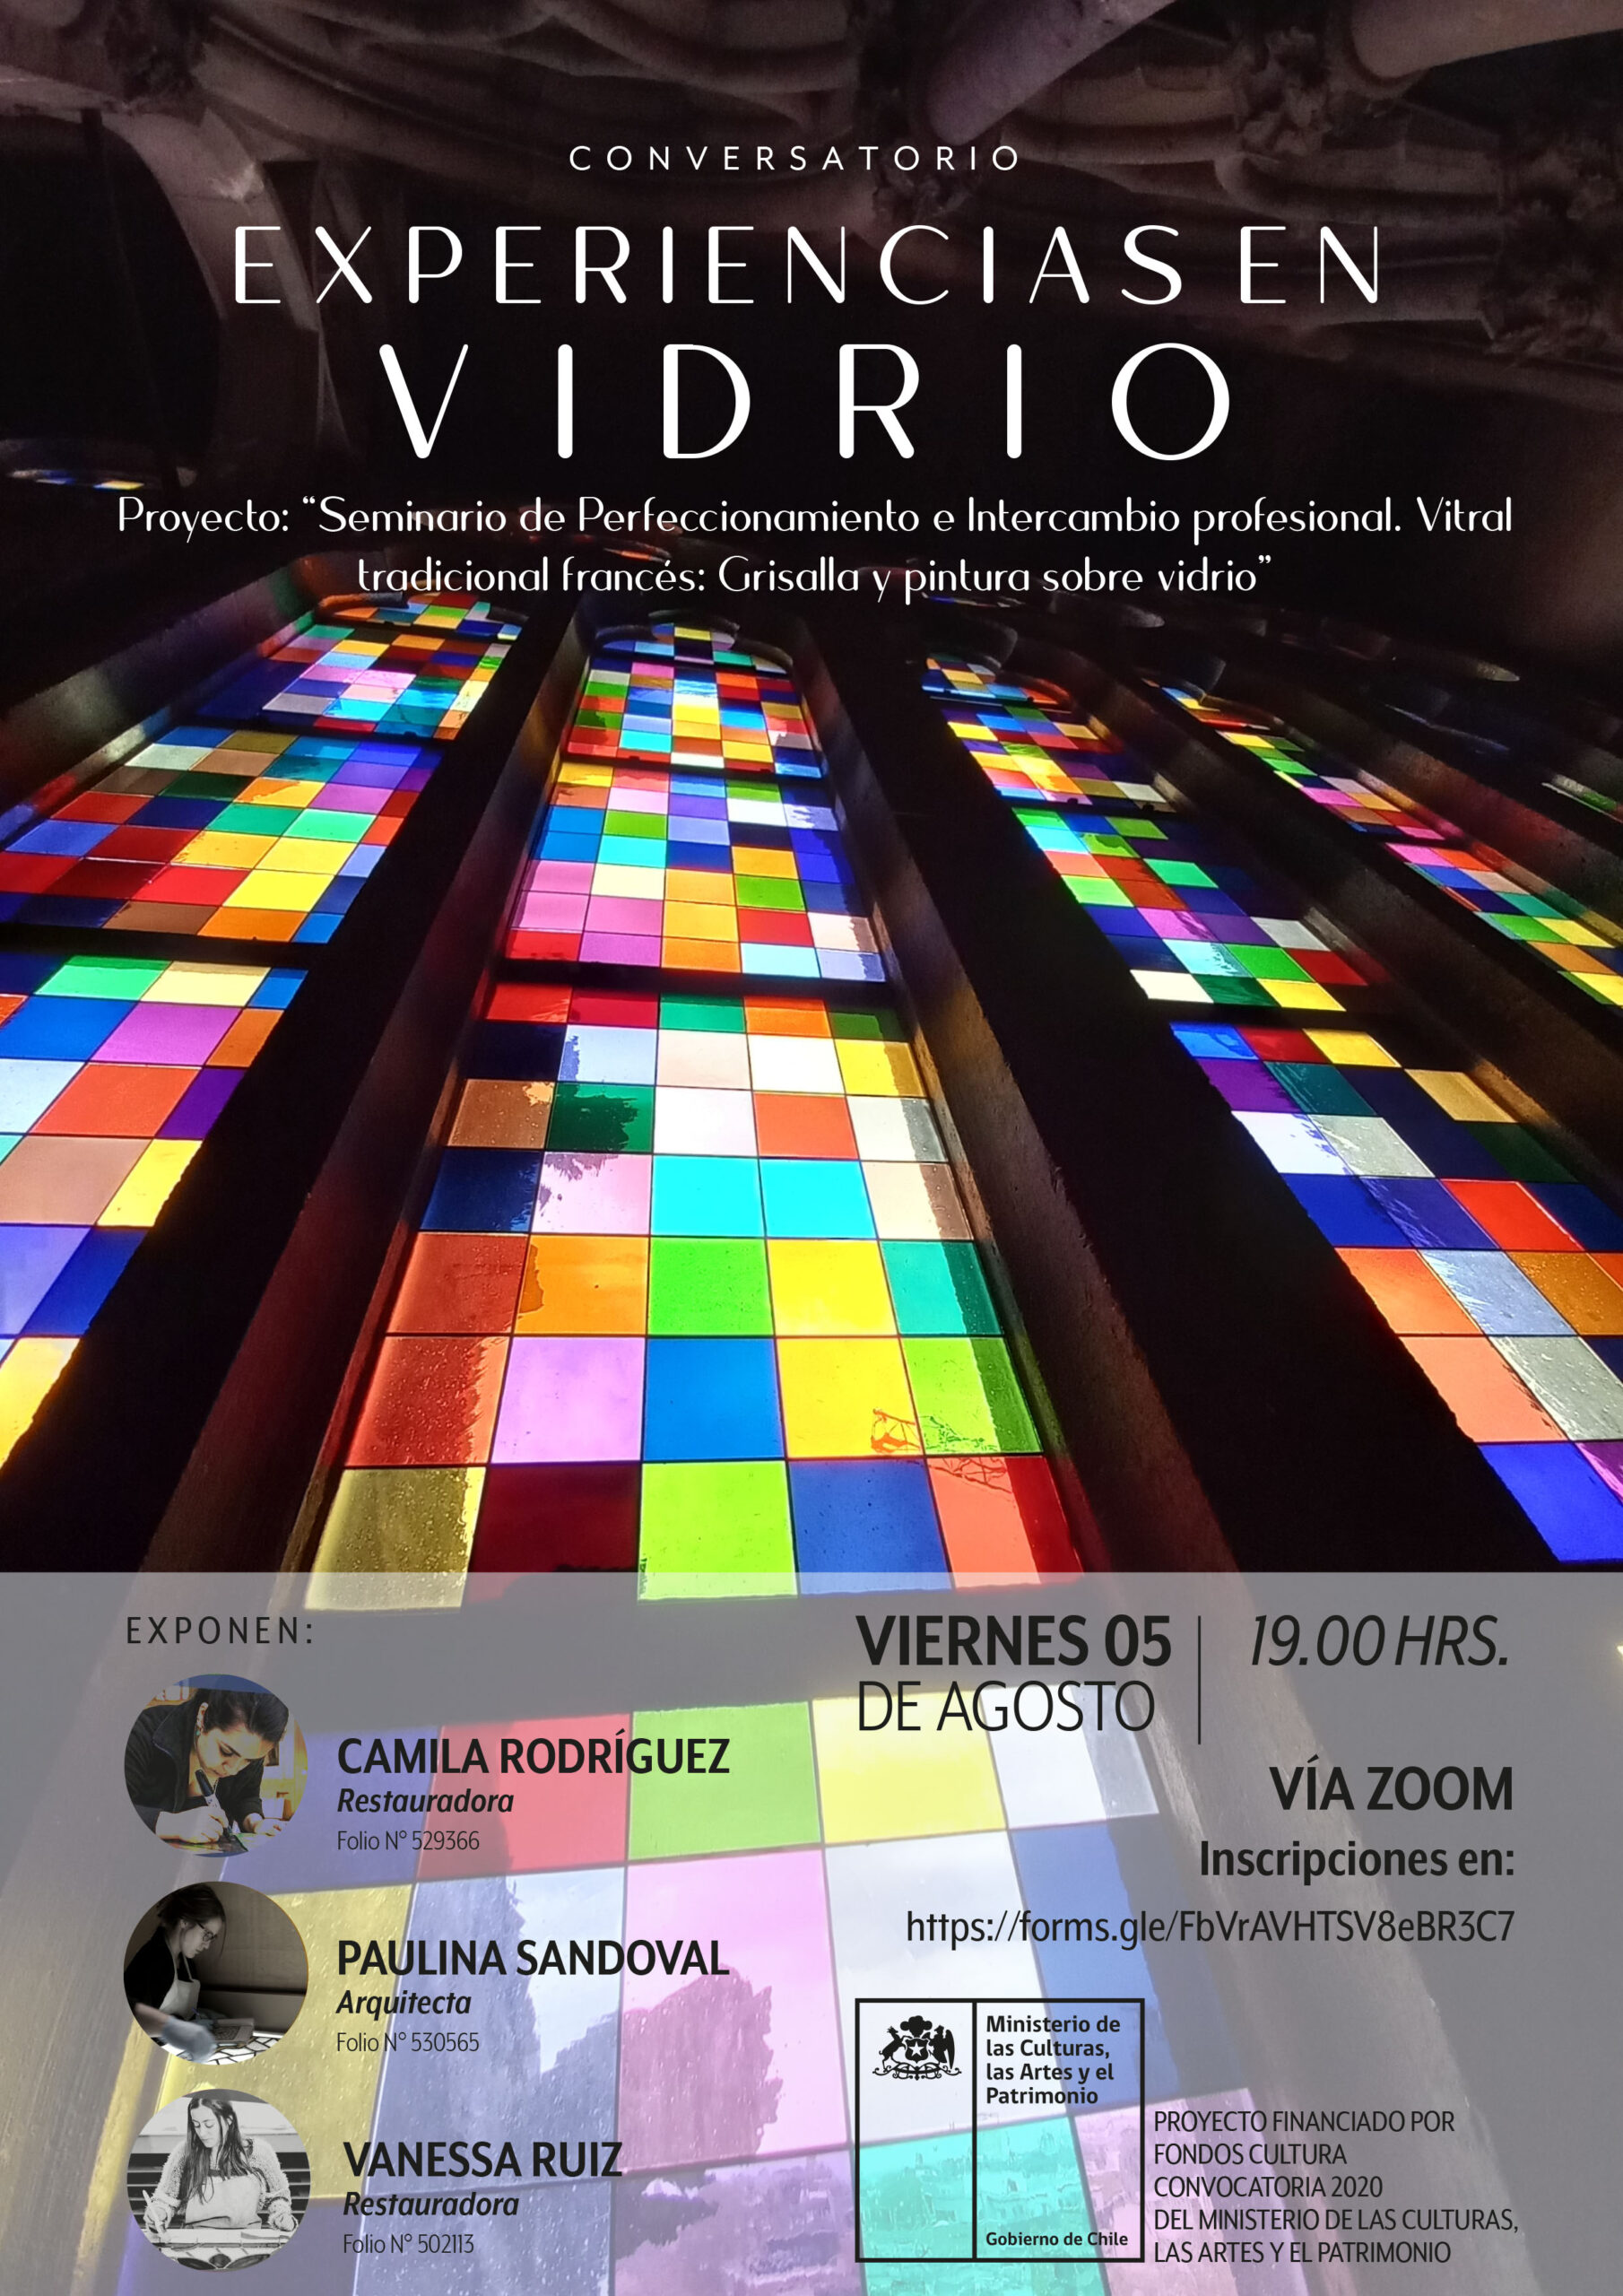 Conversatorio "Experiencias en Vidrio" desde Chile